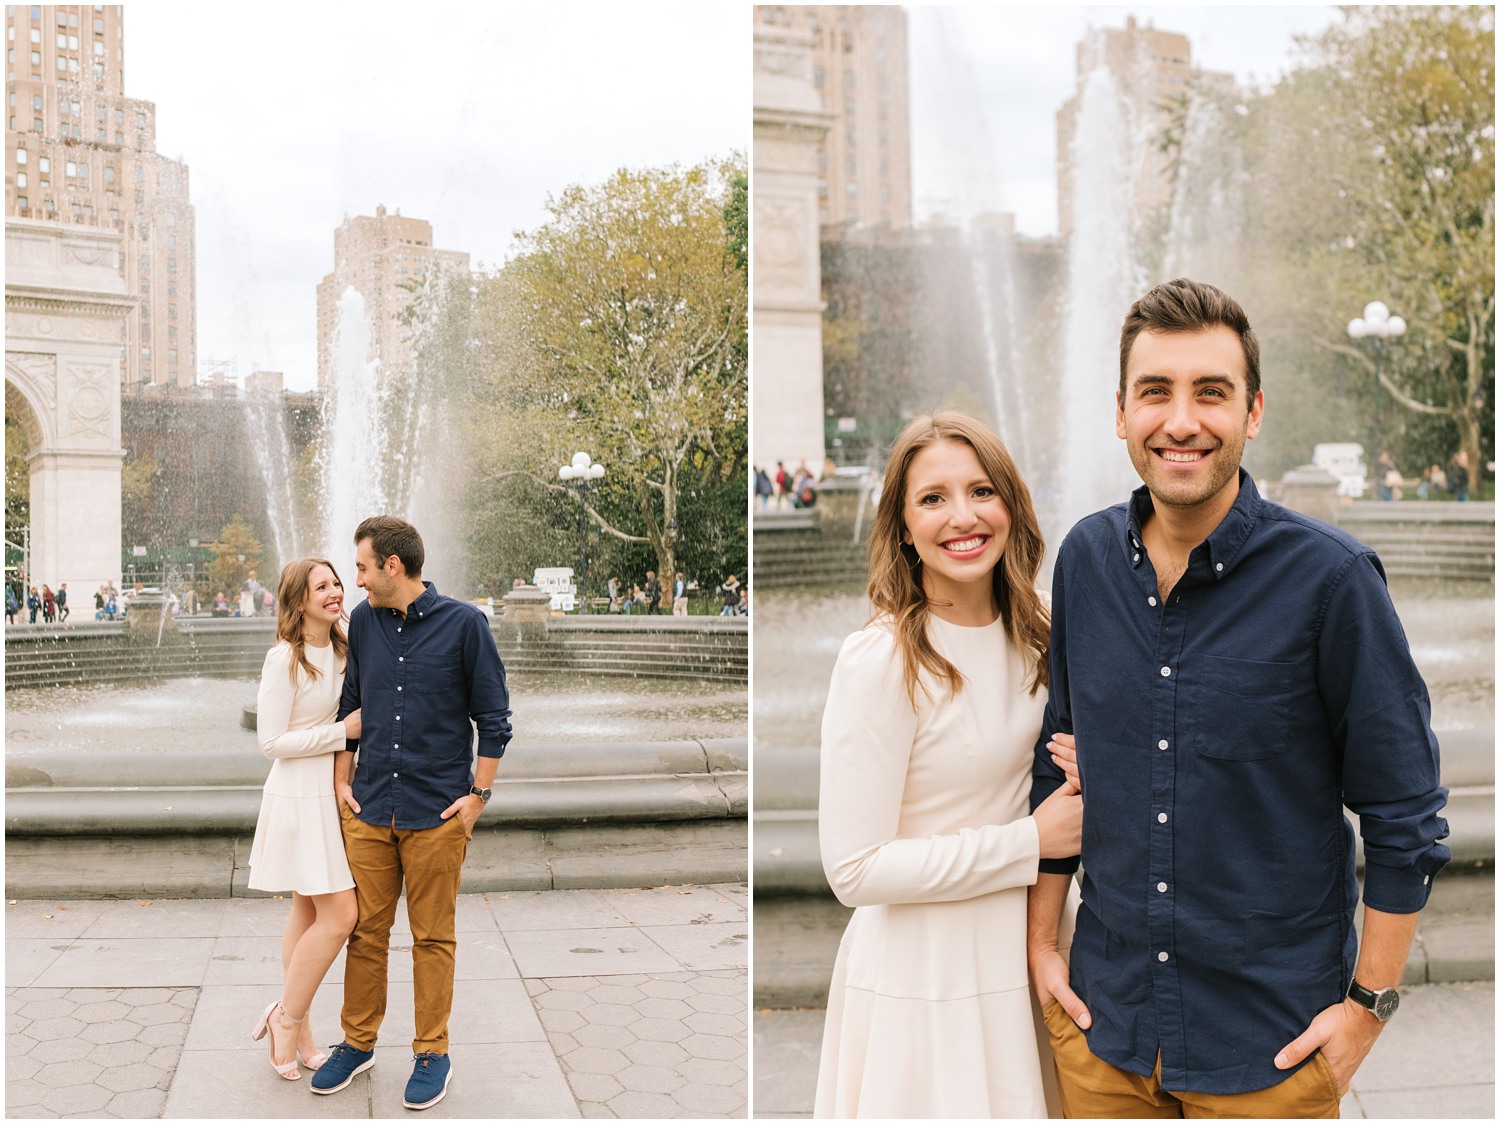 Washington Park engagement session with NY couple